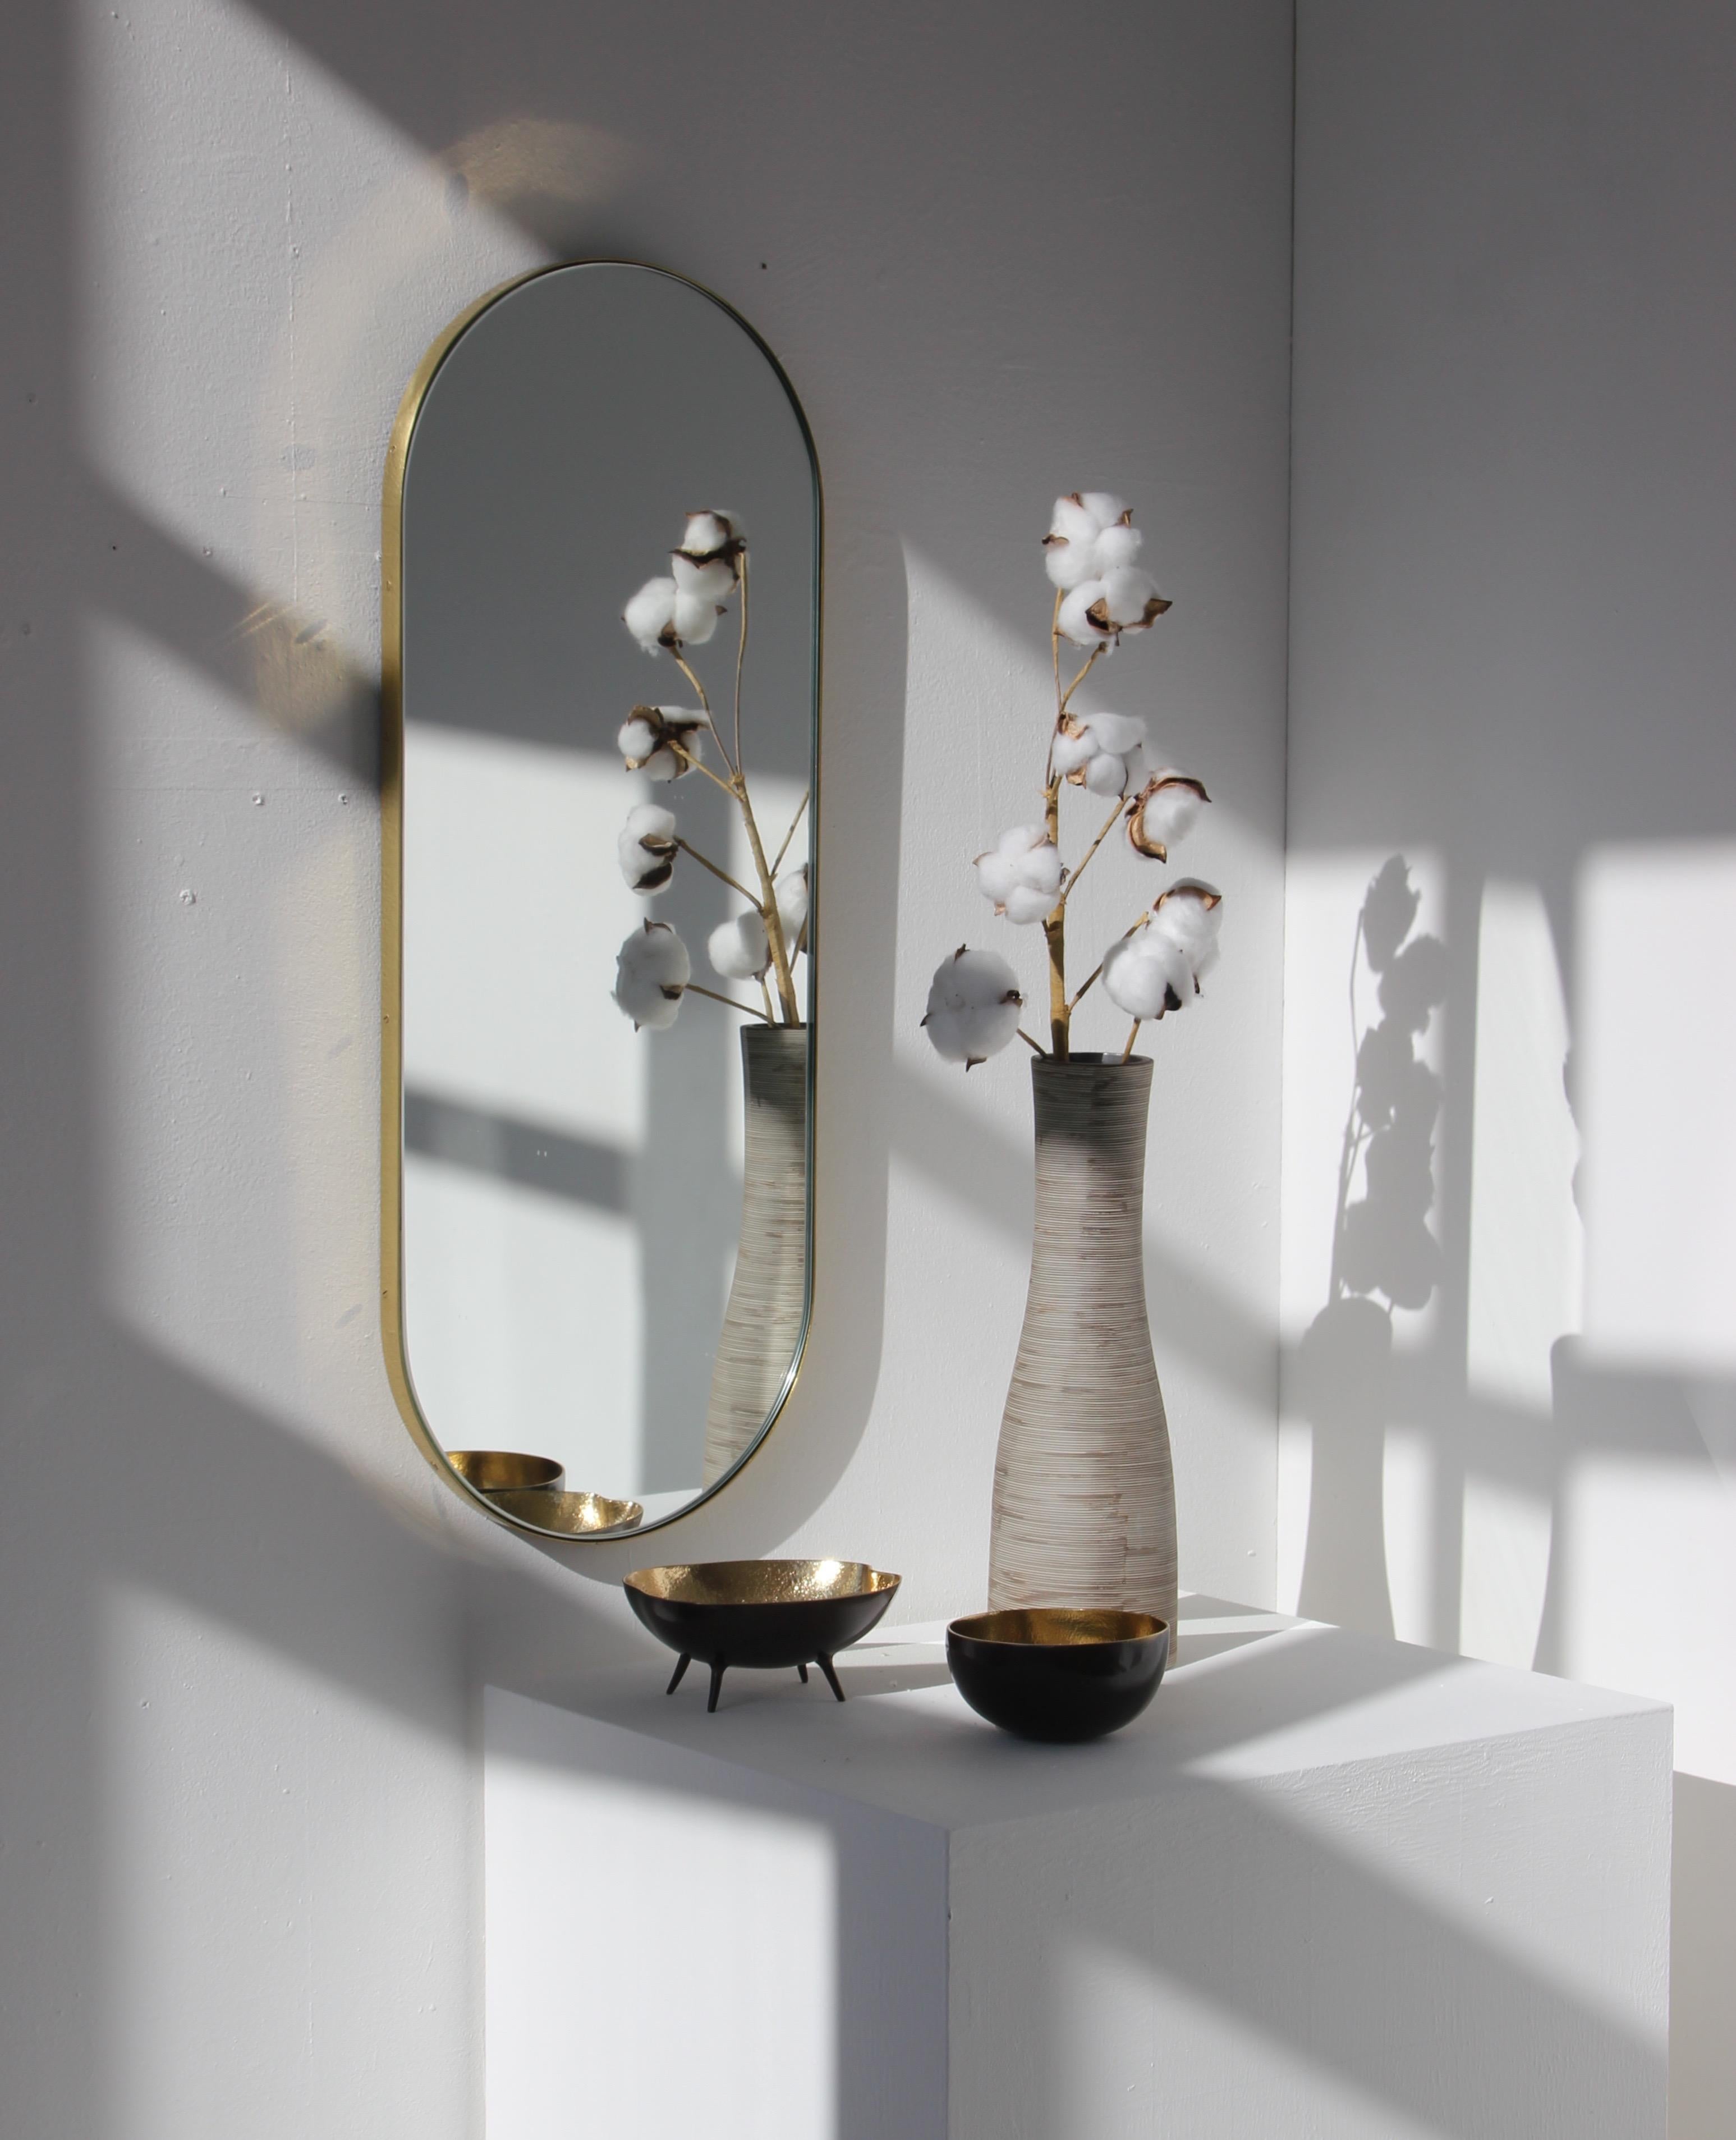 Schöner kapselförmiger Spiegel mit einem eleganten Rahmen aus gebürstetem Messing. Entworfen und handgefertigt in London, UK.

Die mittelgroßen, großen und extragroßen Spiegel (37 cm x 56 cm, 46 cm x 71 cm und 48 cm x 97 cm) sind mit einem